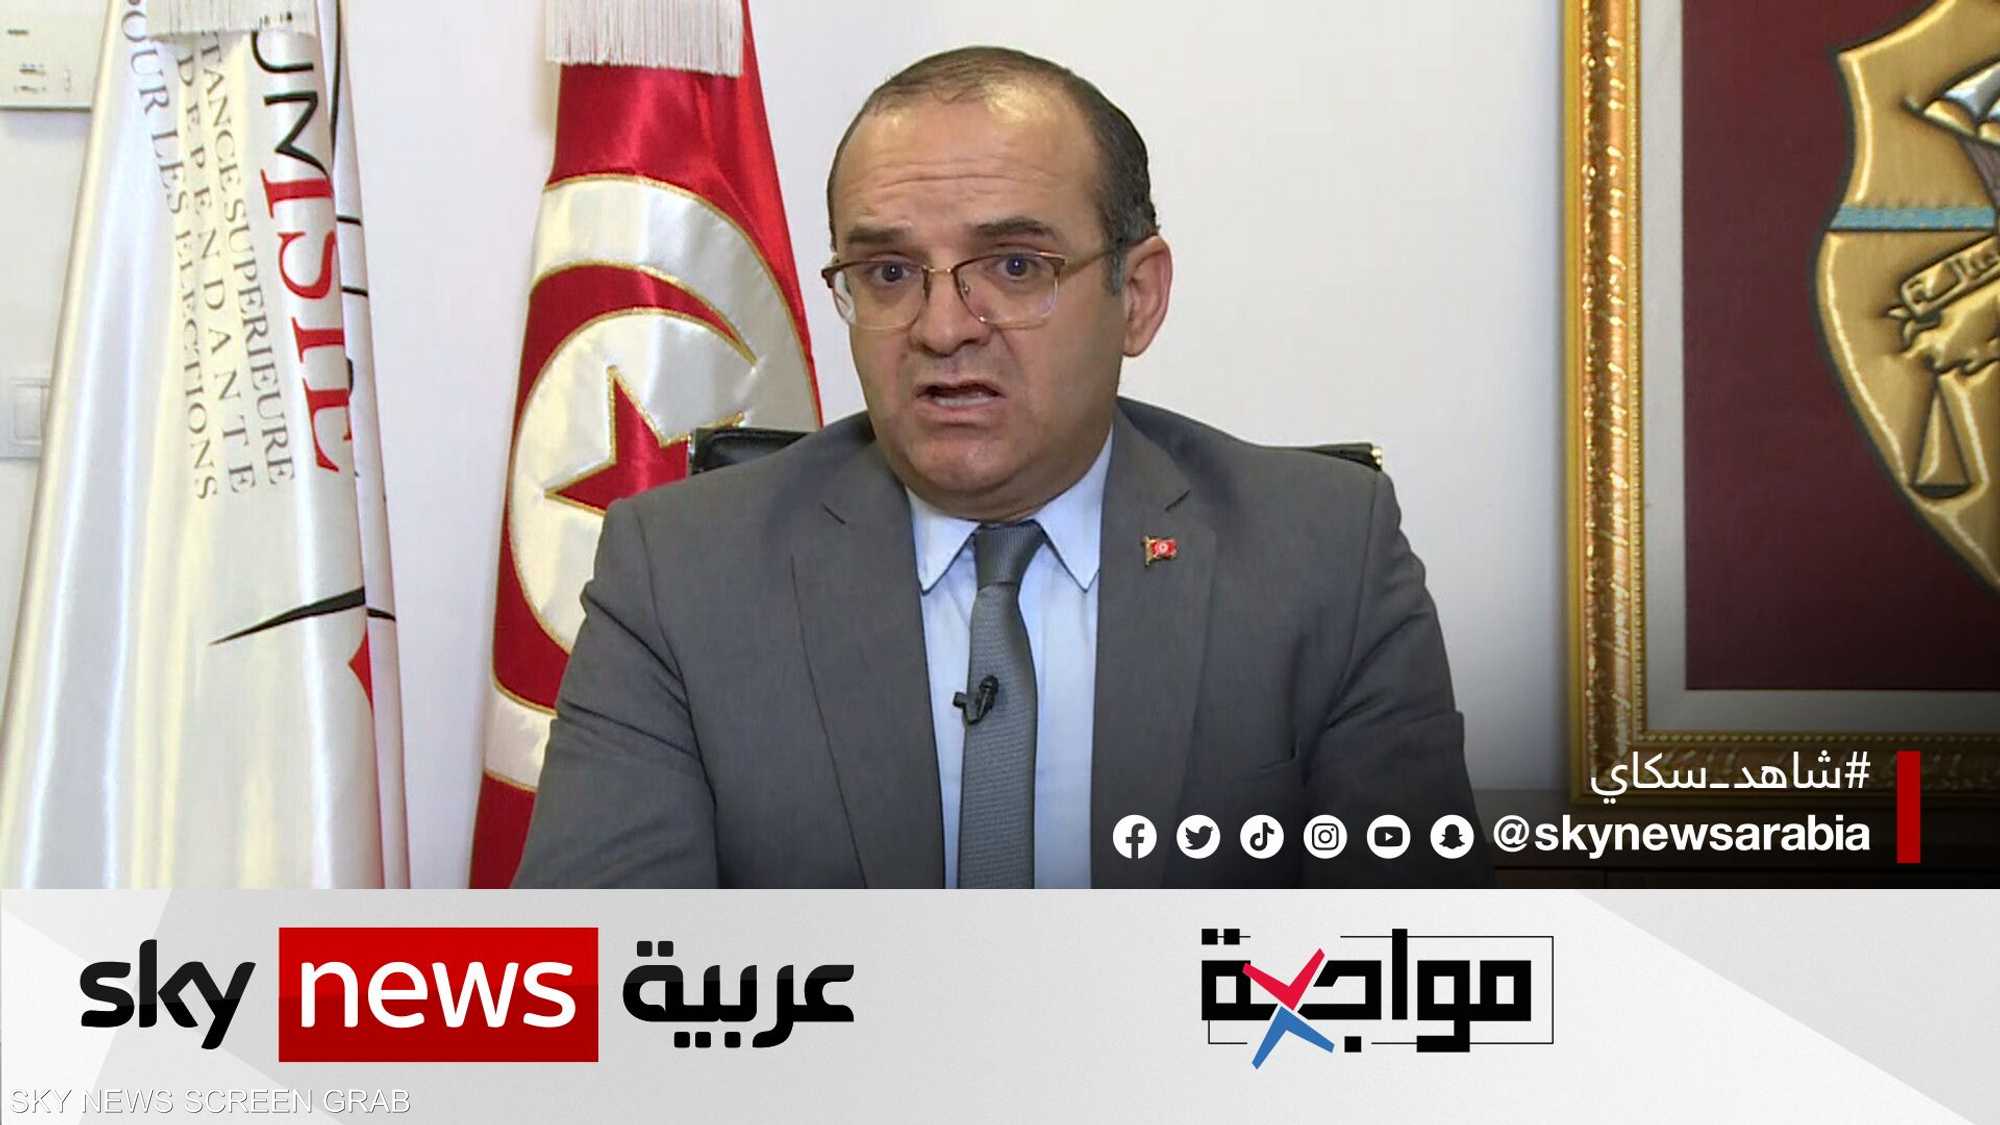 الانتخابات التشريعية المبكرة في تونس.. استحقاق منتظر